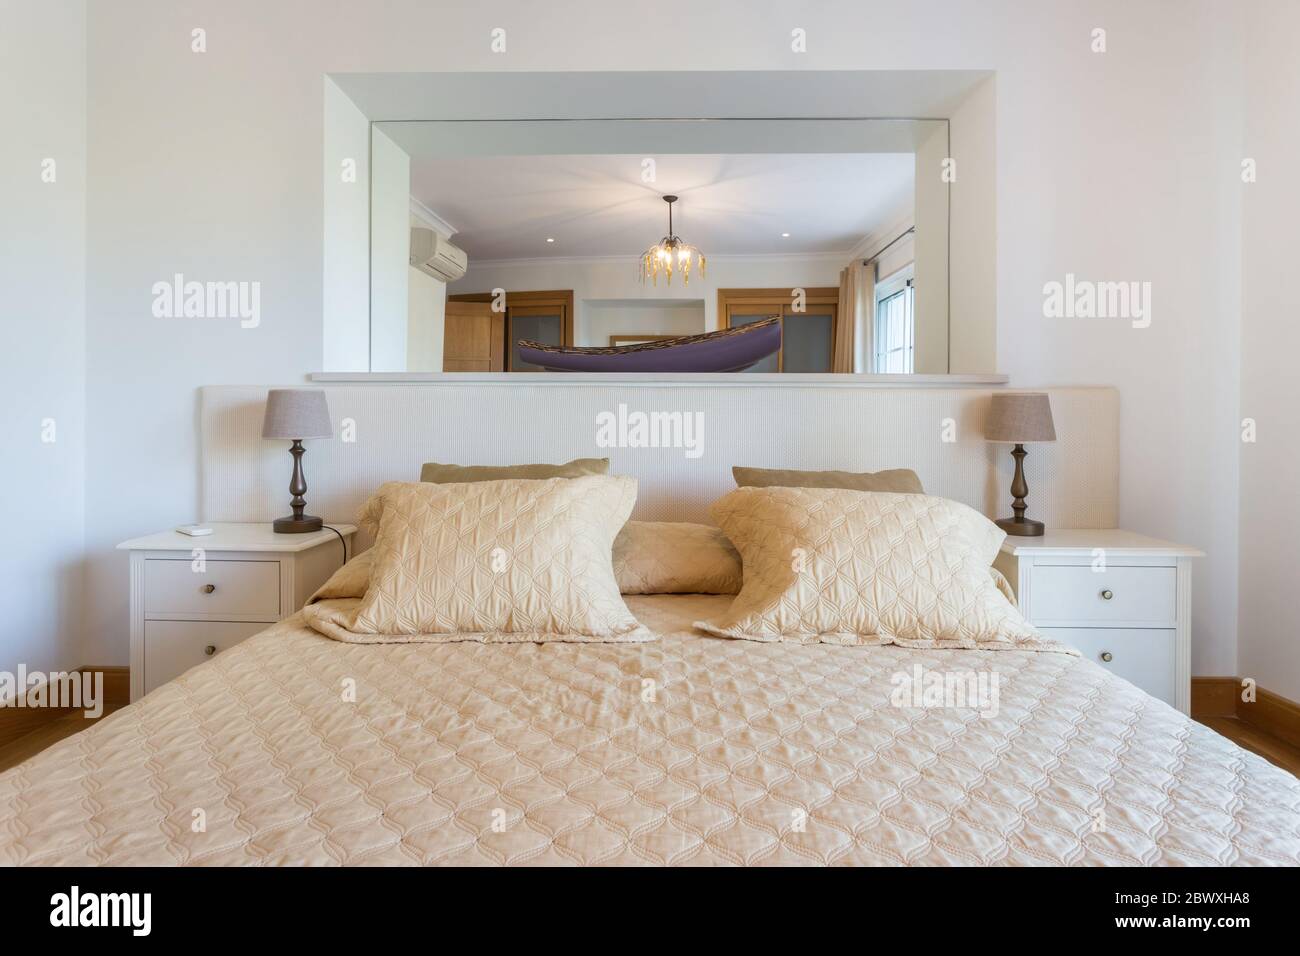 Schönes modernes Schlafzimmer mit einem großen Spiegel an der Wand. Europäisches Hoteldesign. Nahaufnahme. Stockfoto